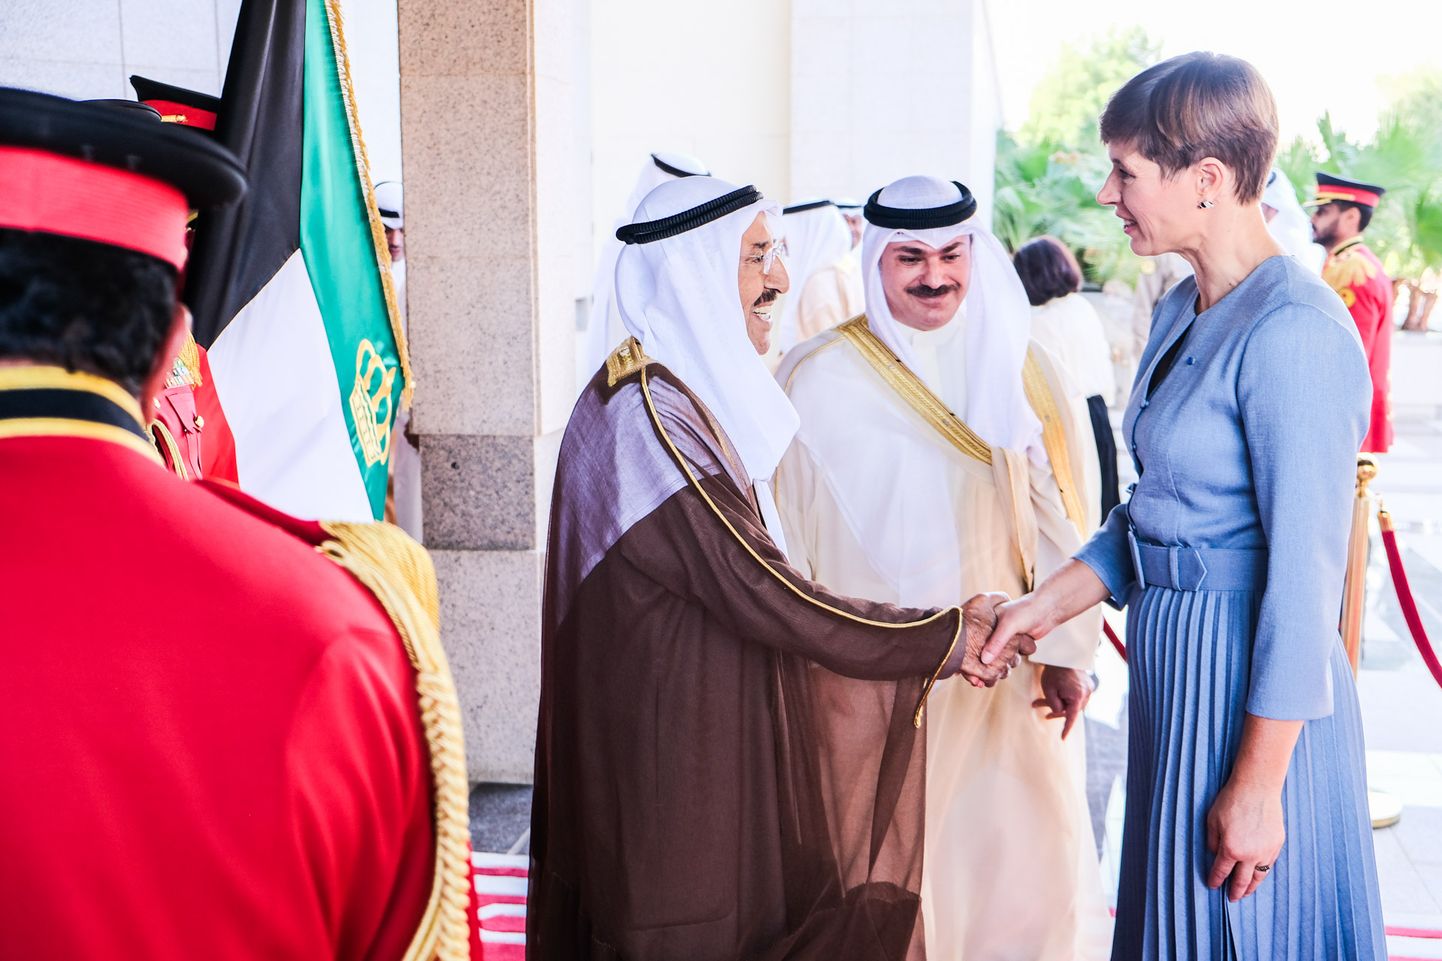 Kersti Kaljulaid arutas Kuveidi emiiriga koostöövõimalusi ÜROs ning ärivõimaluste avardamist.